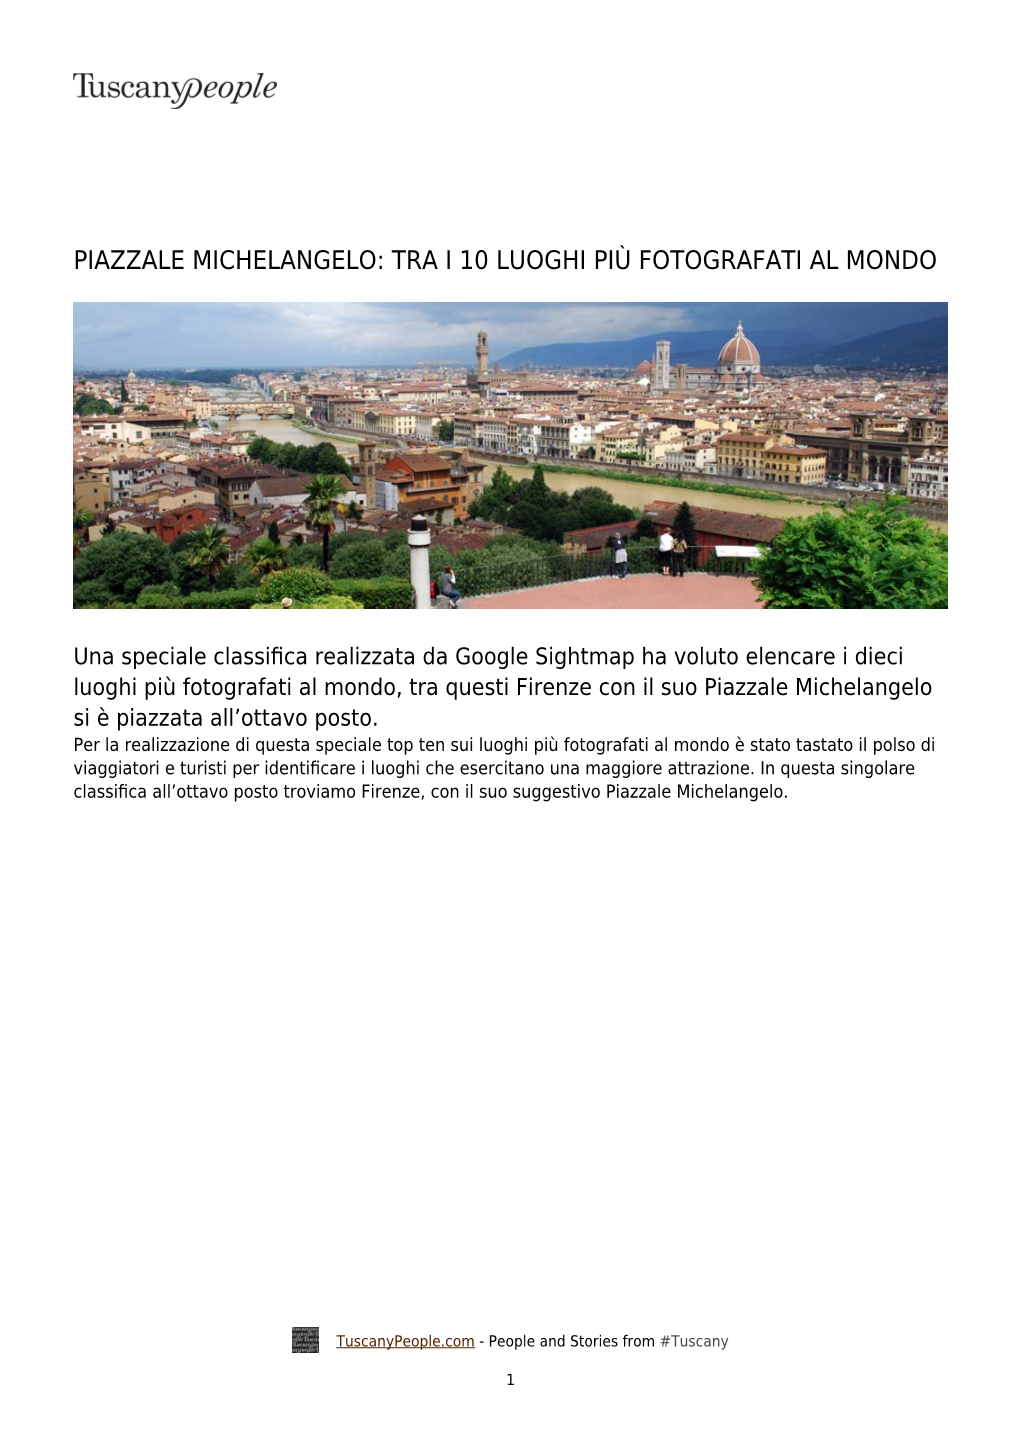 Piazzale Michelangelo: Tra I 10 Luoghi Più Fotografati Al Mondo